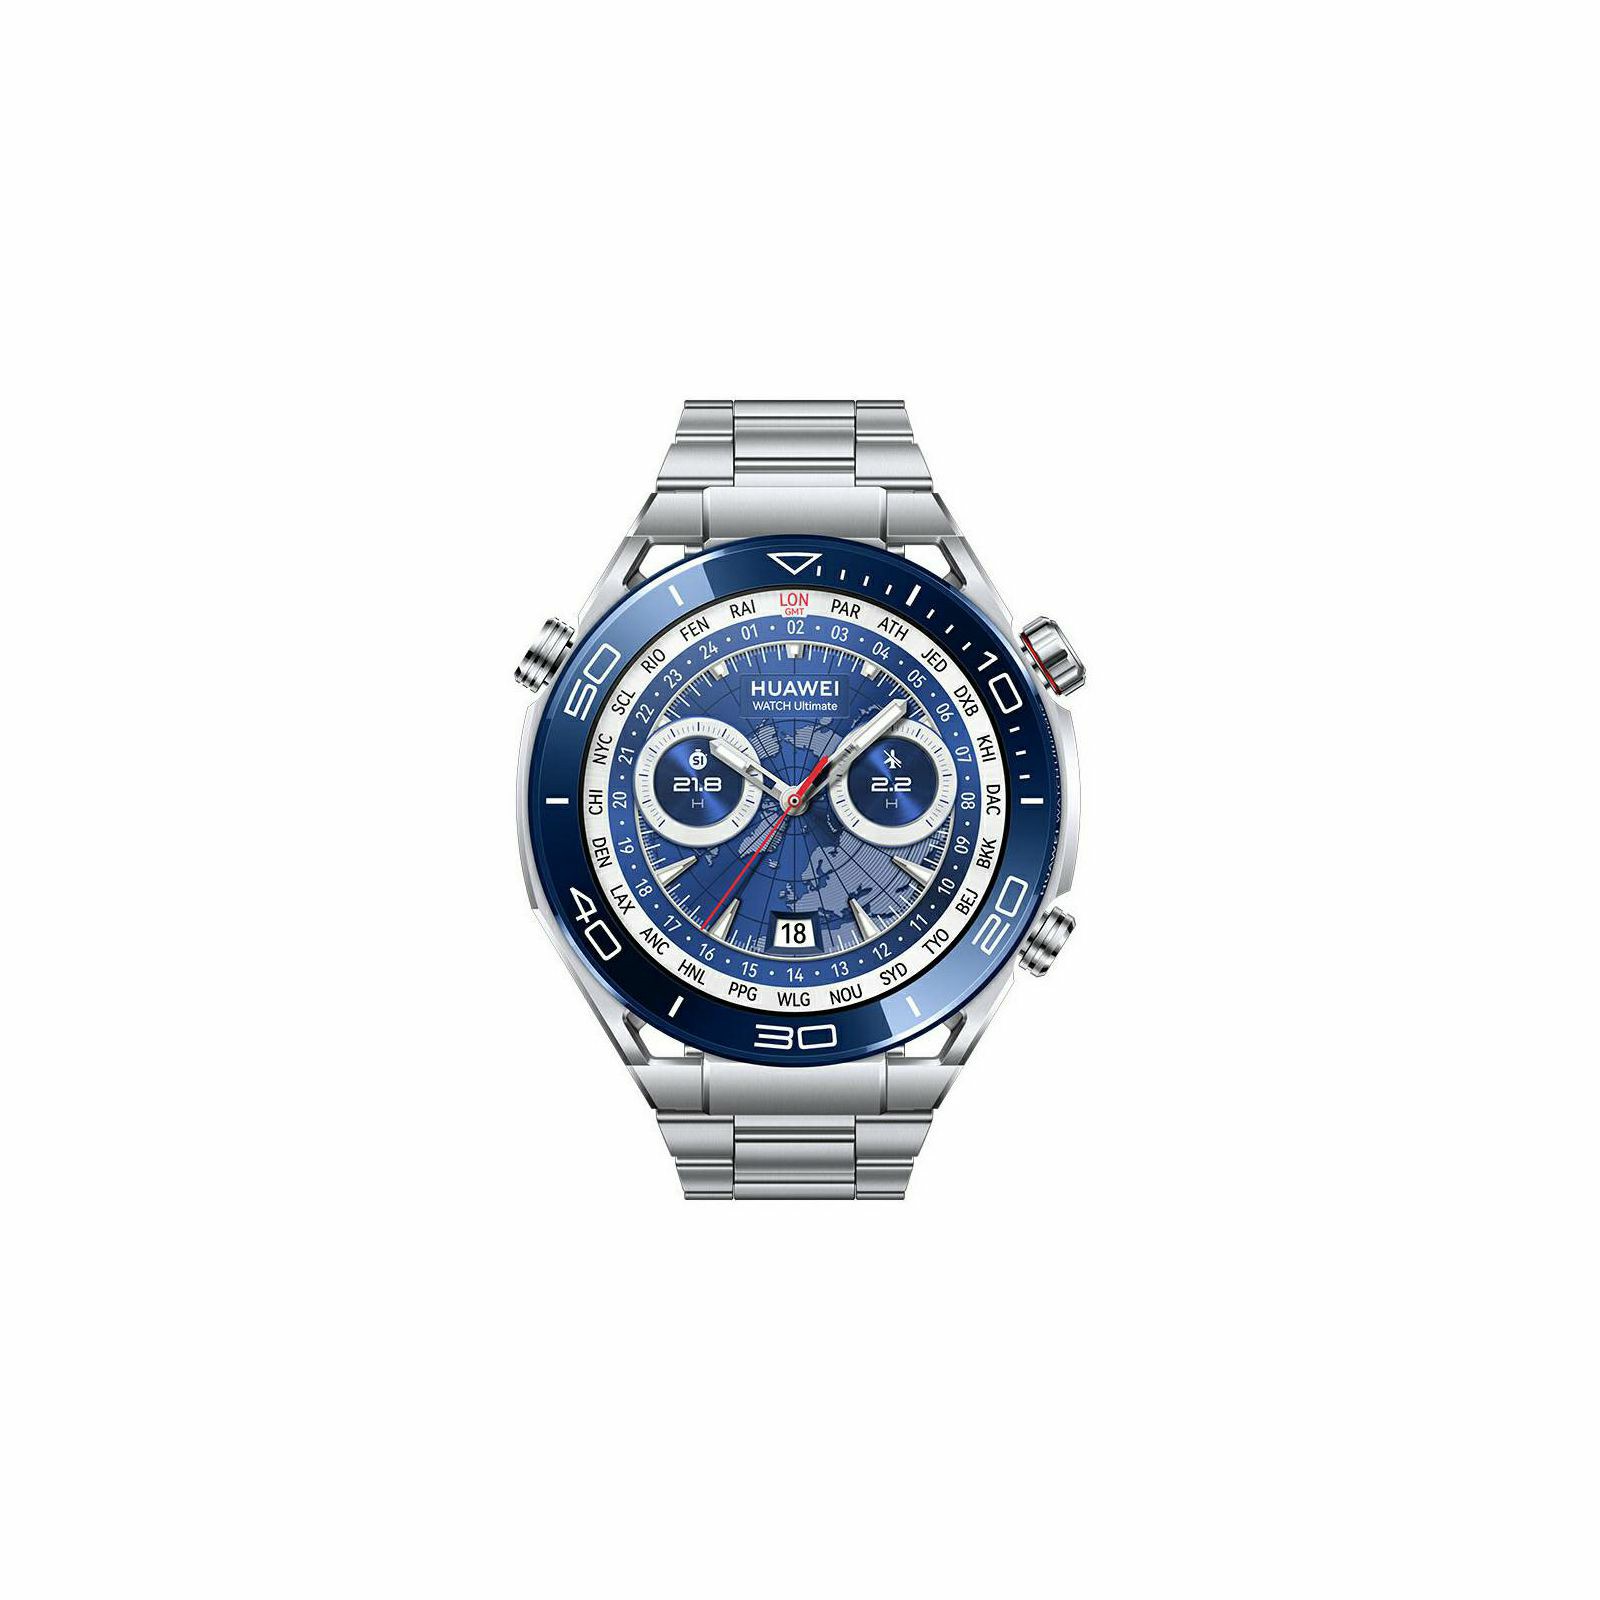 pametni-sat-huawei-watch-ultimate-485mm-colombo-b29-steel-st-98694-72449_46907.jpg